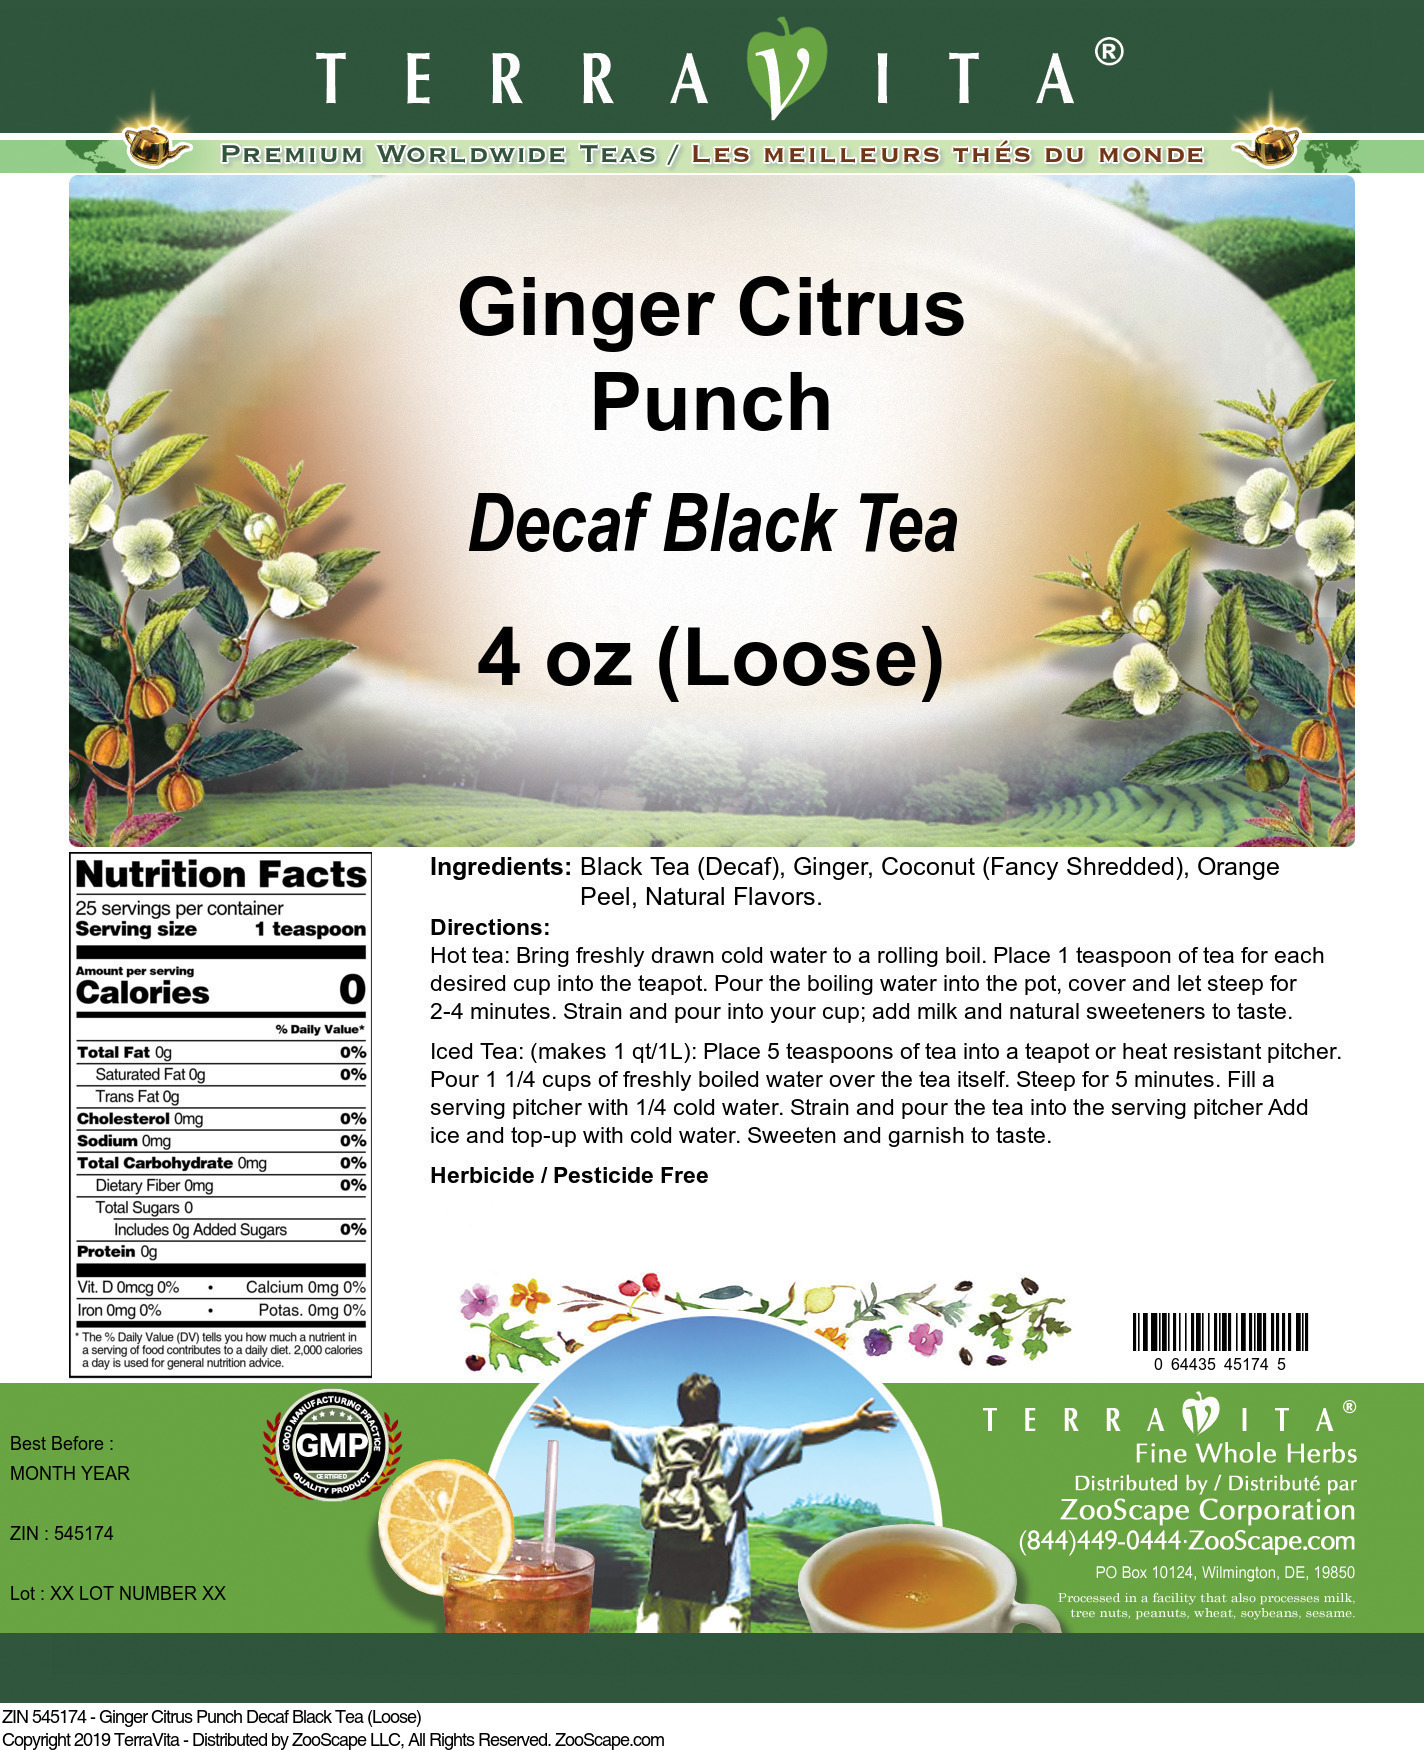 Ginger Citrus Punch Decaf Black Tea (Loose) - Label